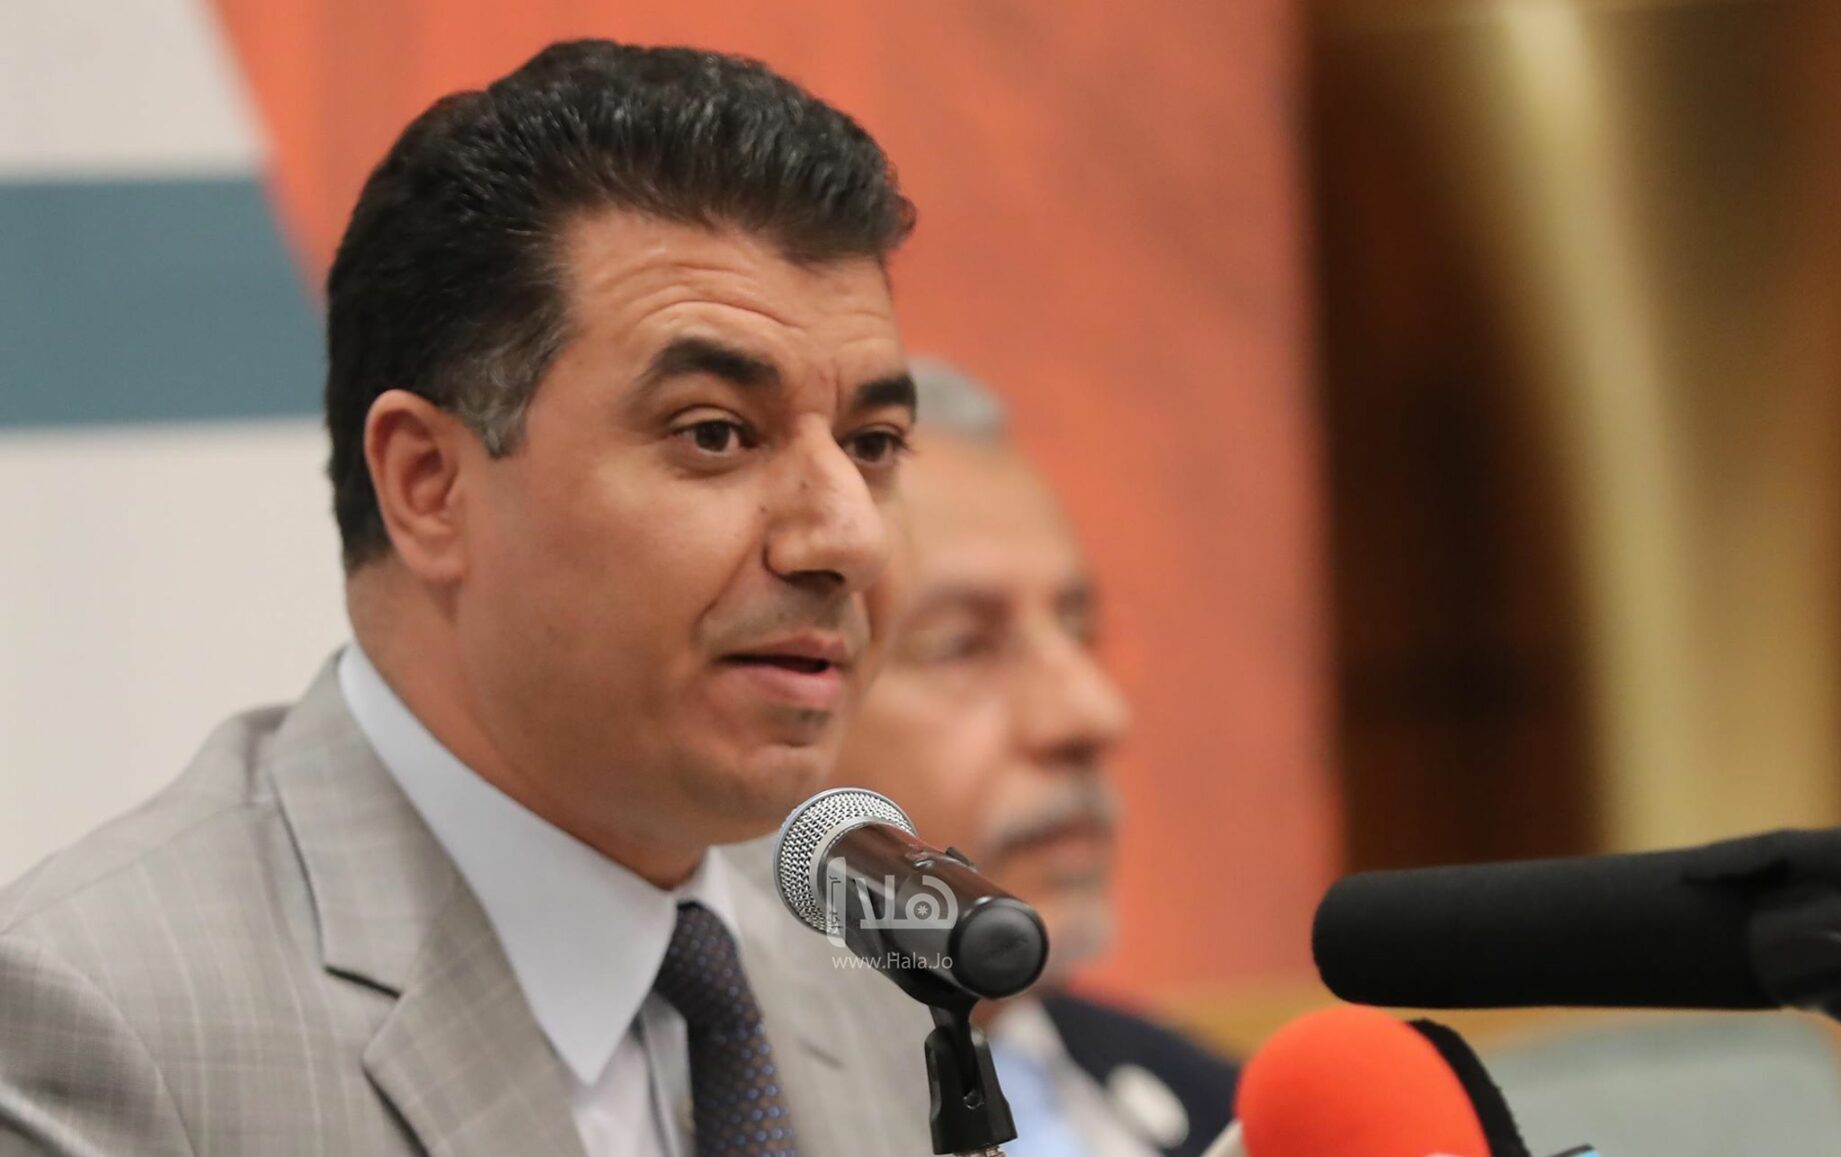 وزير الزراعة الأردني خالد حنيفات يُقر بتصدير الخضروات لإسرائيل